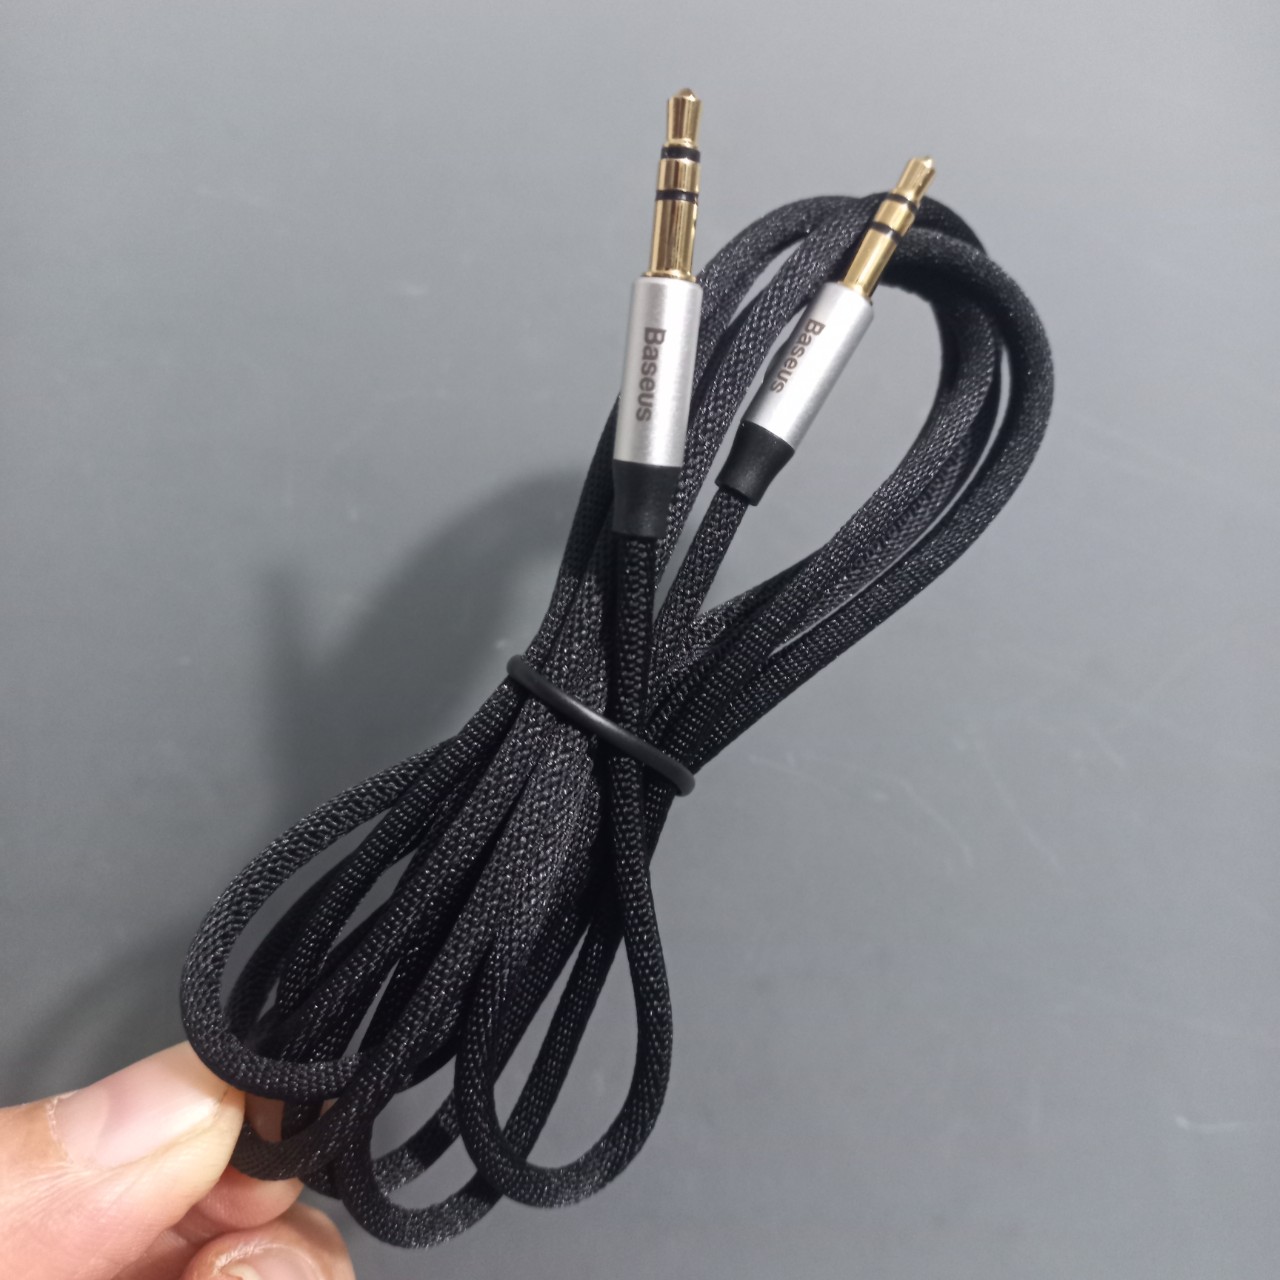 Dây cáp âm thanh 2 đầu 3.5mm Baseus Yiven Audio Cable M30 (150cm)  - Hàng chính hãng